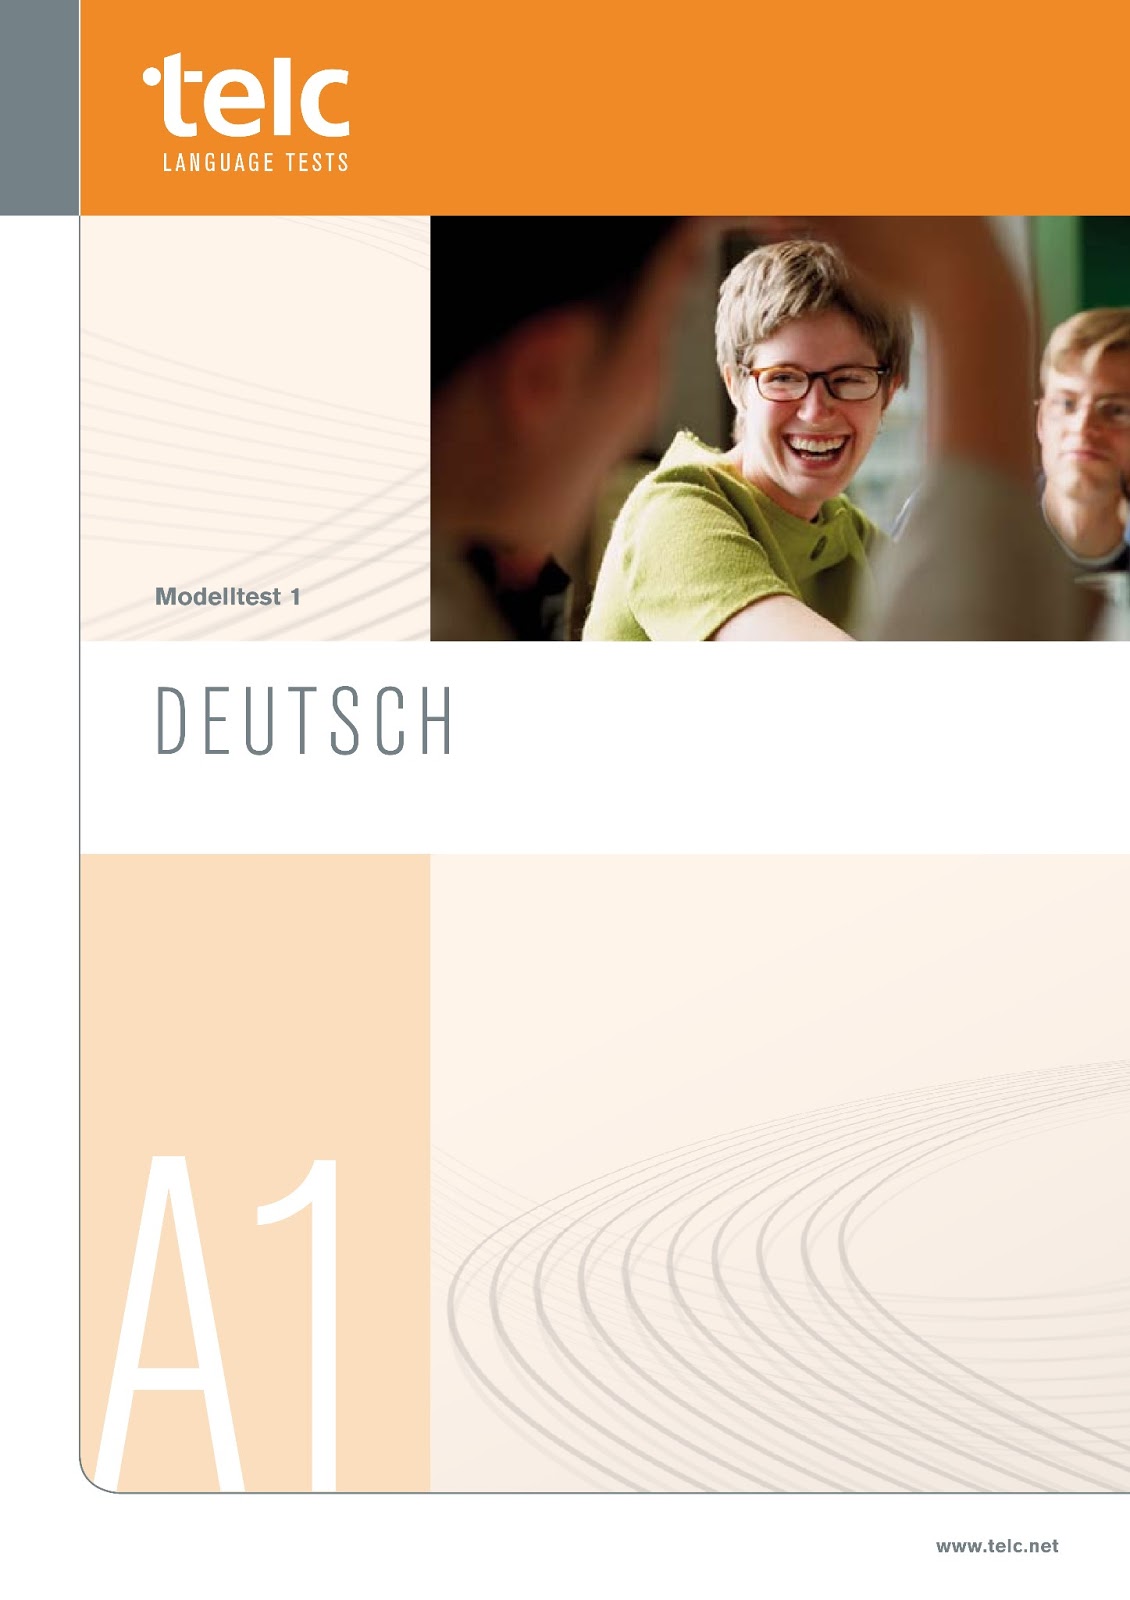 Learn Deutsch: Download telc Start Deutsch 1